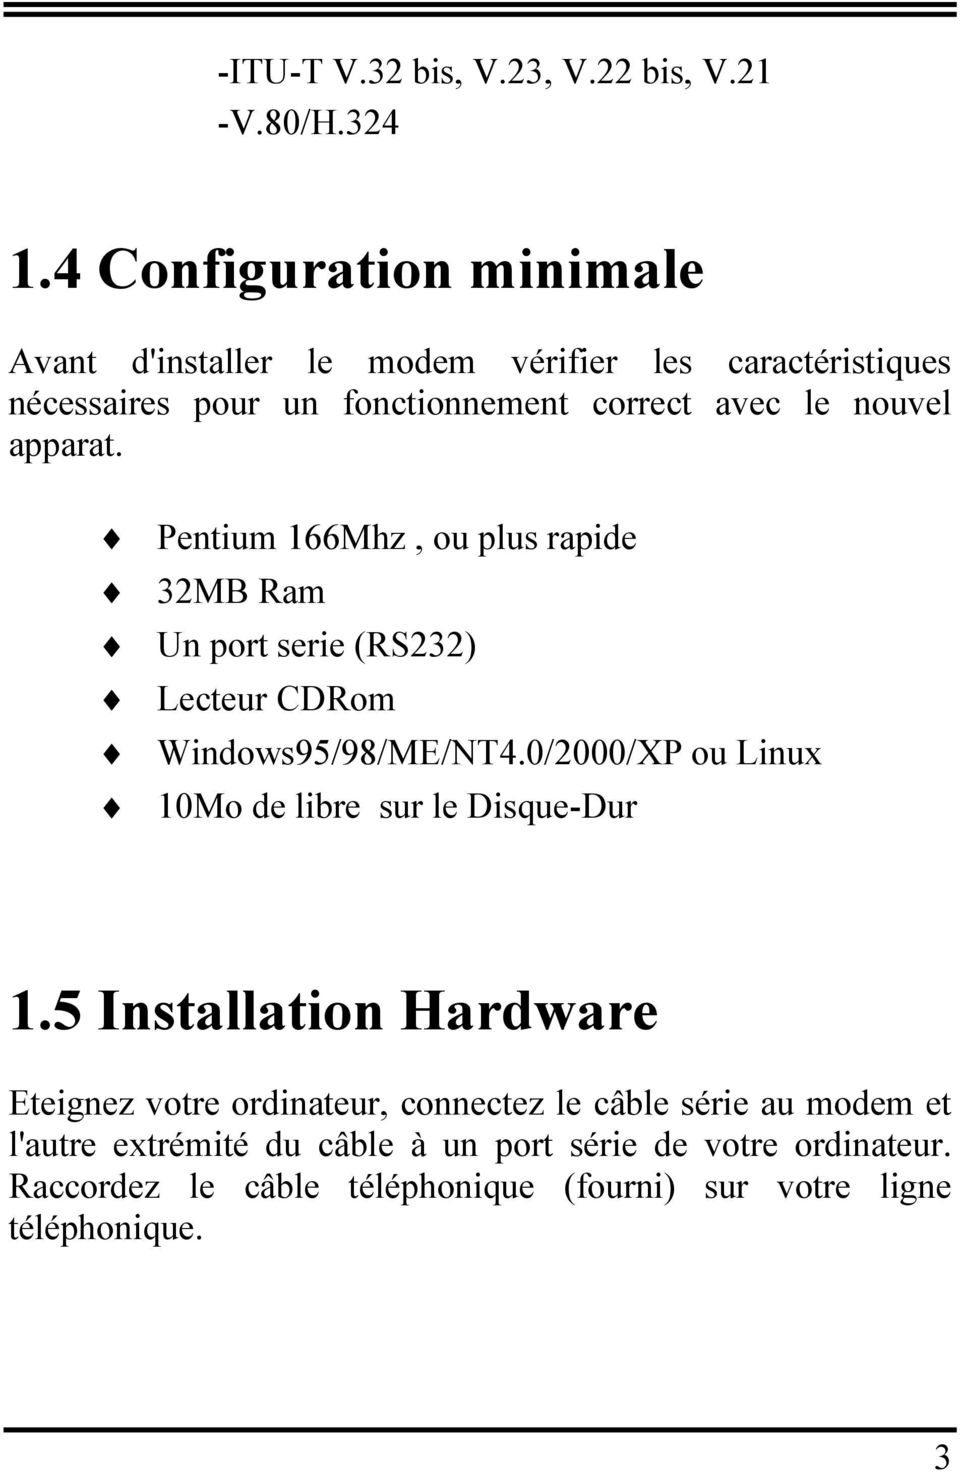 apparat. Pentium 166Mhz, ou plus rapide 32MB Ram Un port serie (RS232) Lecteur CDRom Windows95/98/ME/NT4.